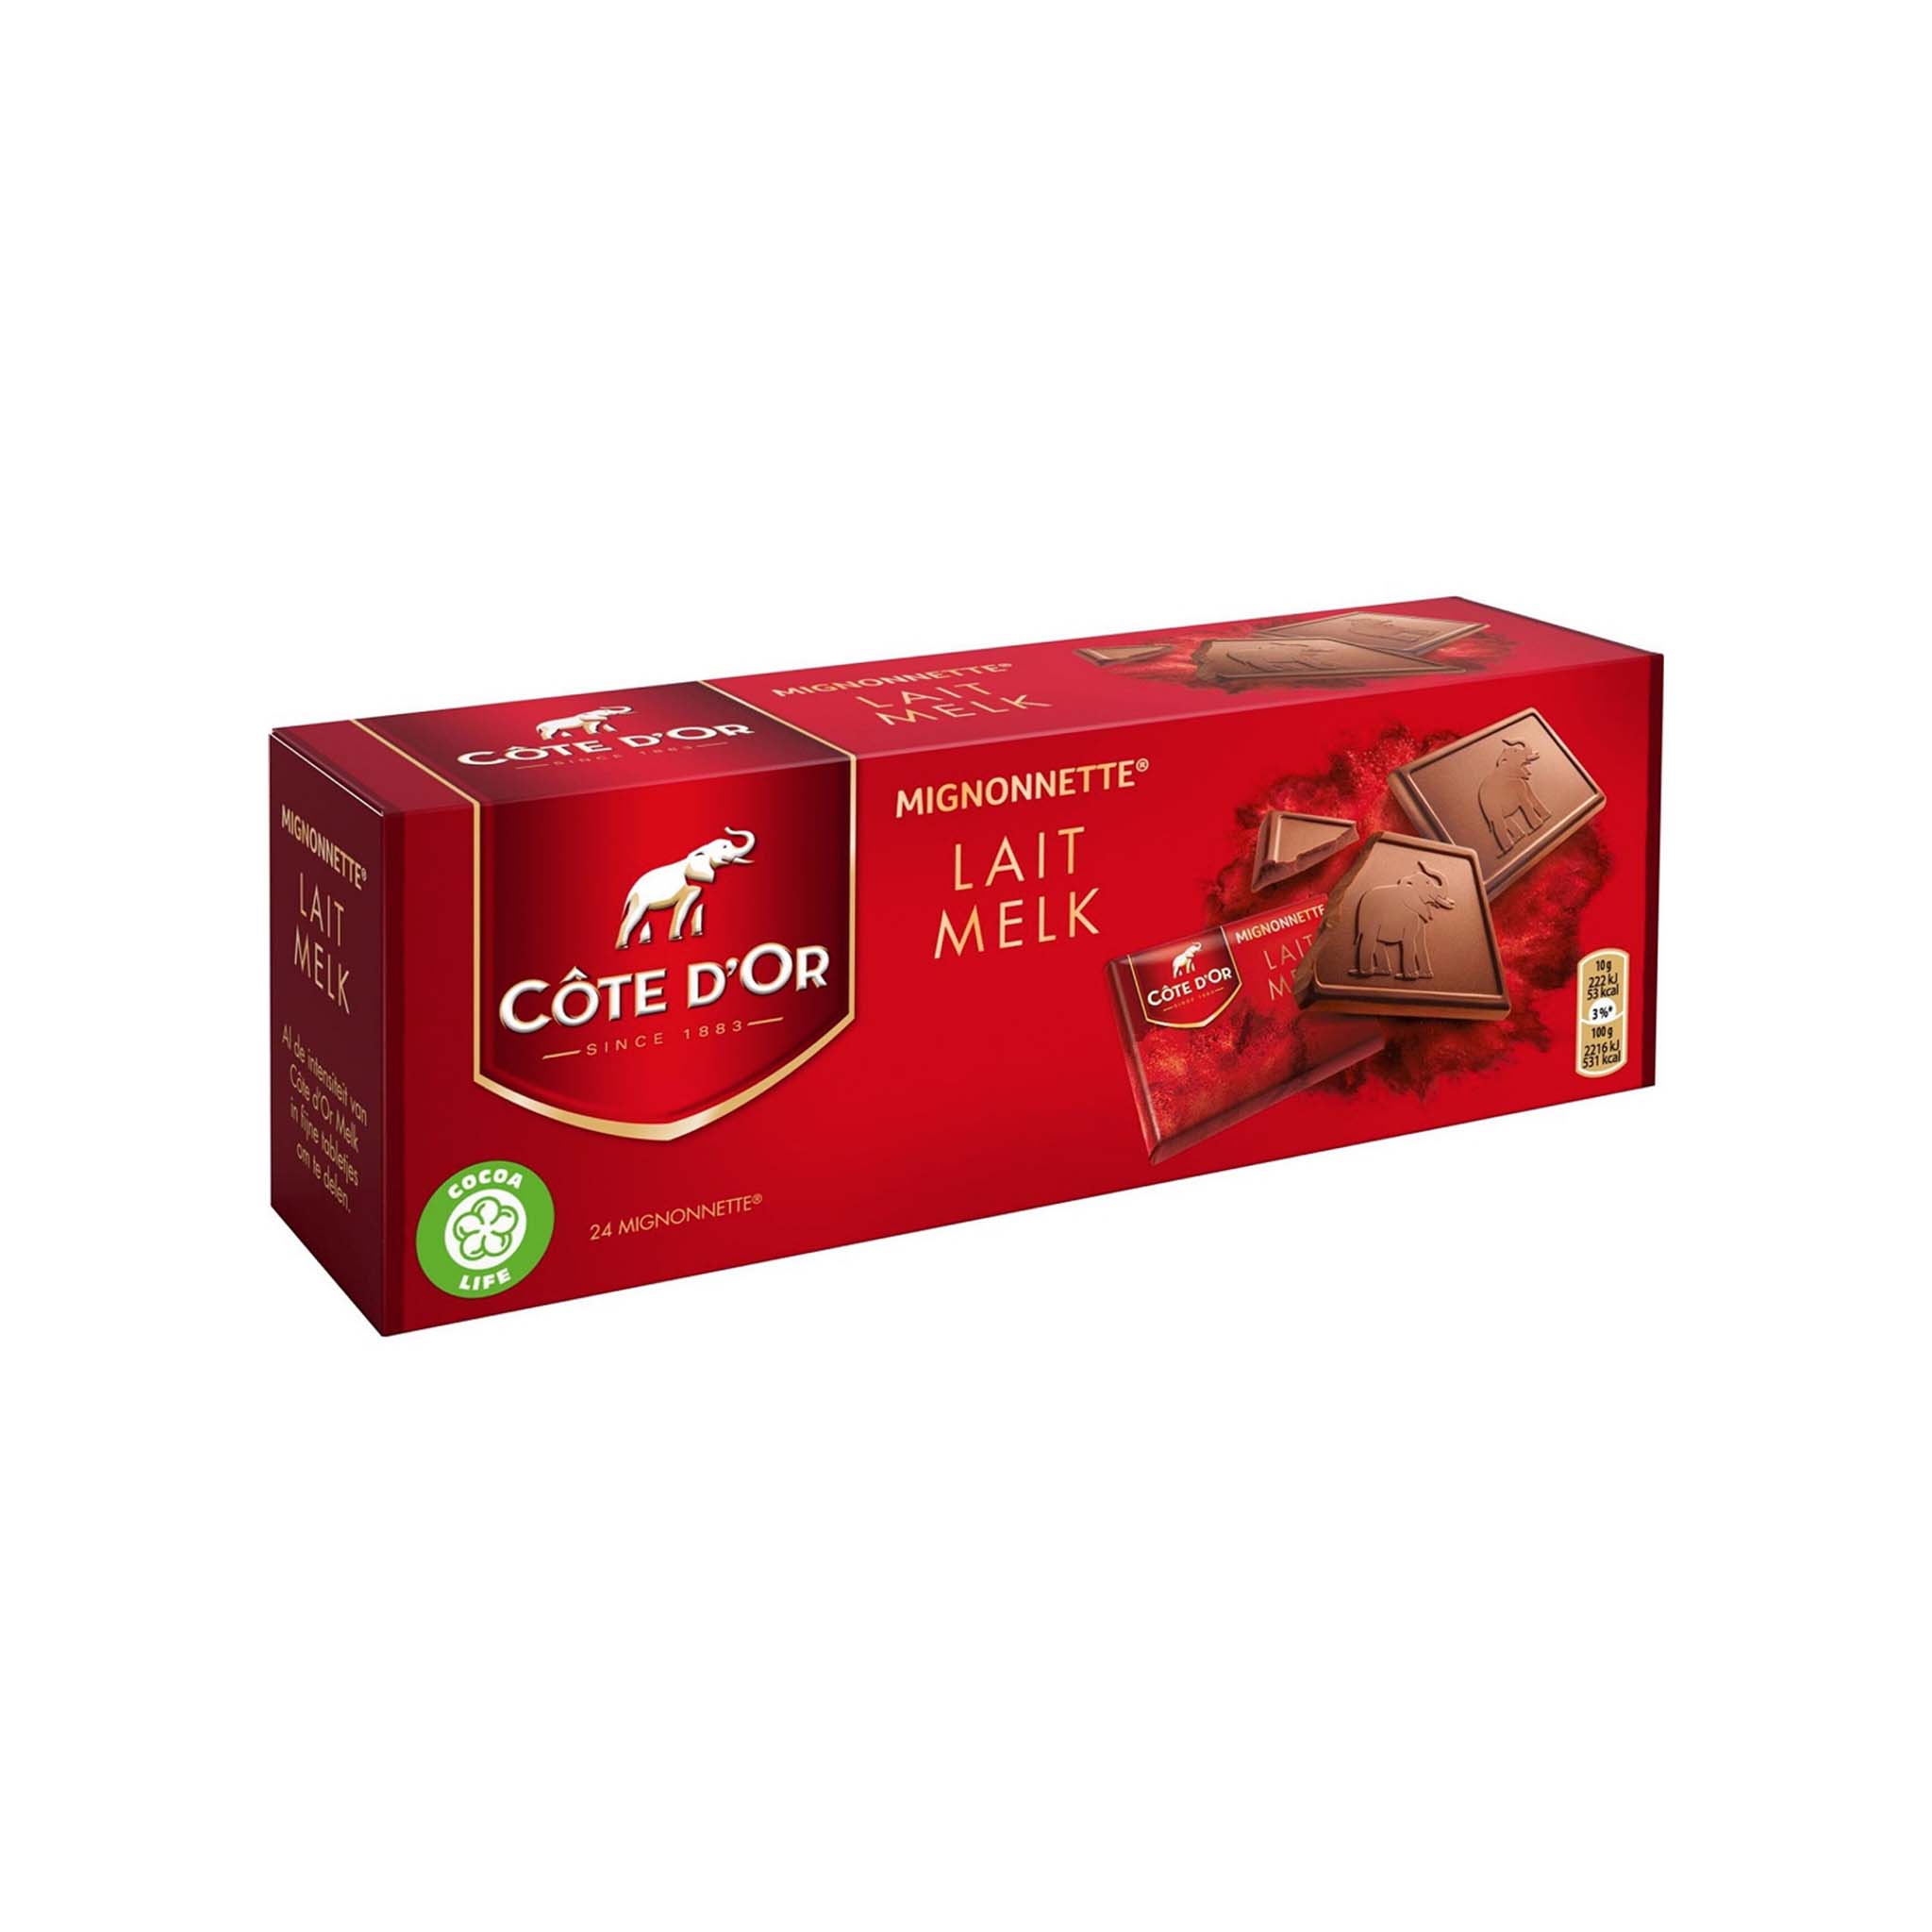 COTE D'OR MIGNONNETTE MILK CHOCOLATE BOX 24pc 240g